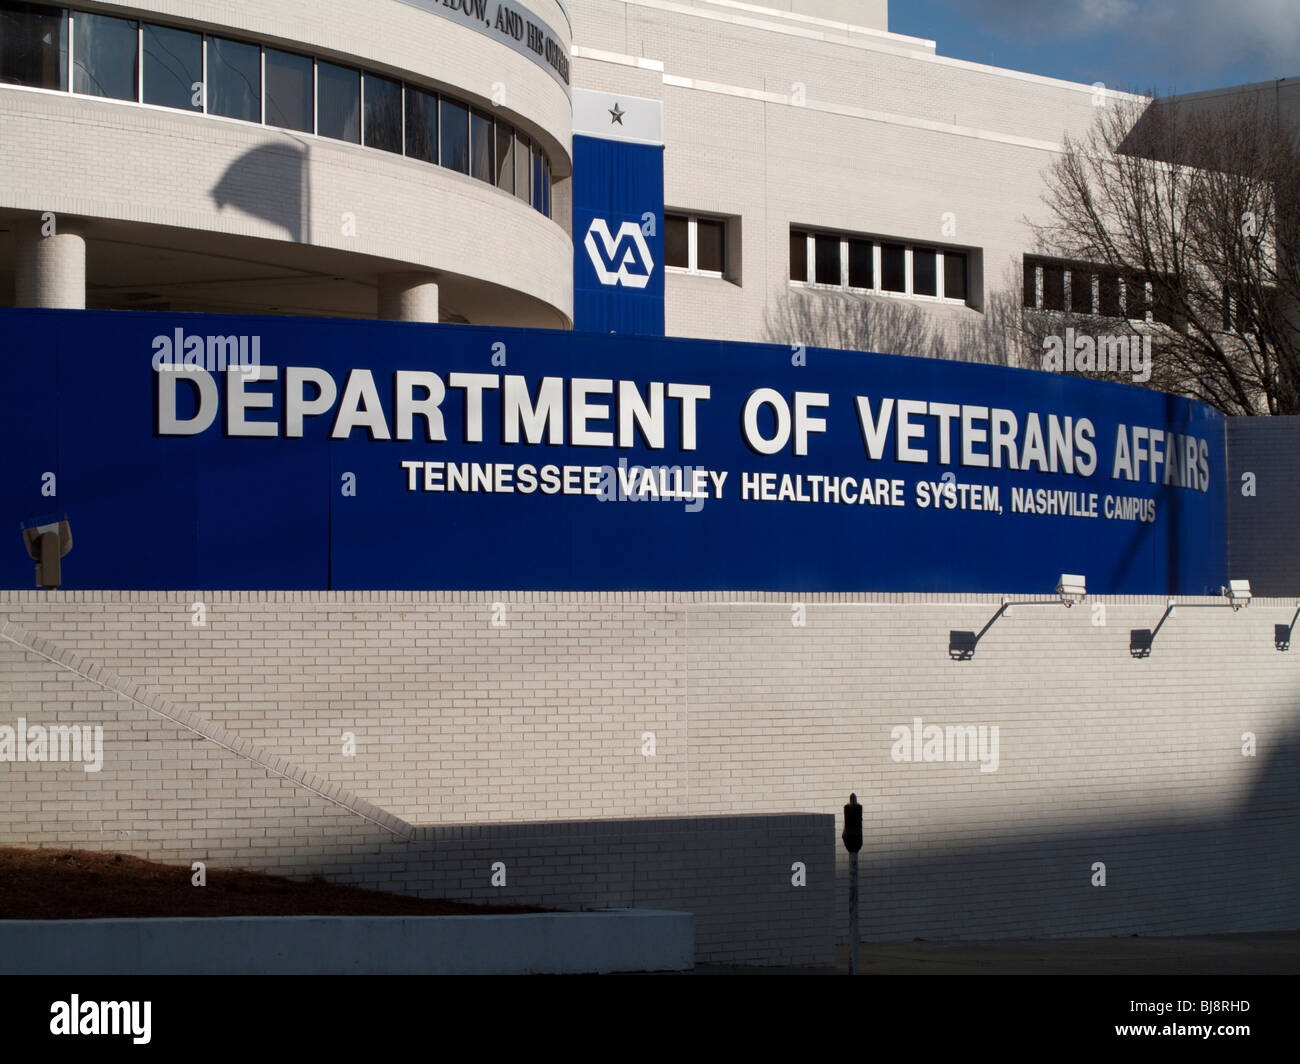 Reparto degli affari di veterani ospedale. Nashville, Tennessee. Foto Stock